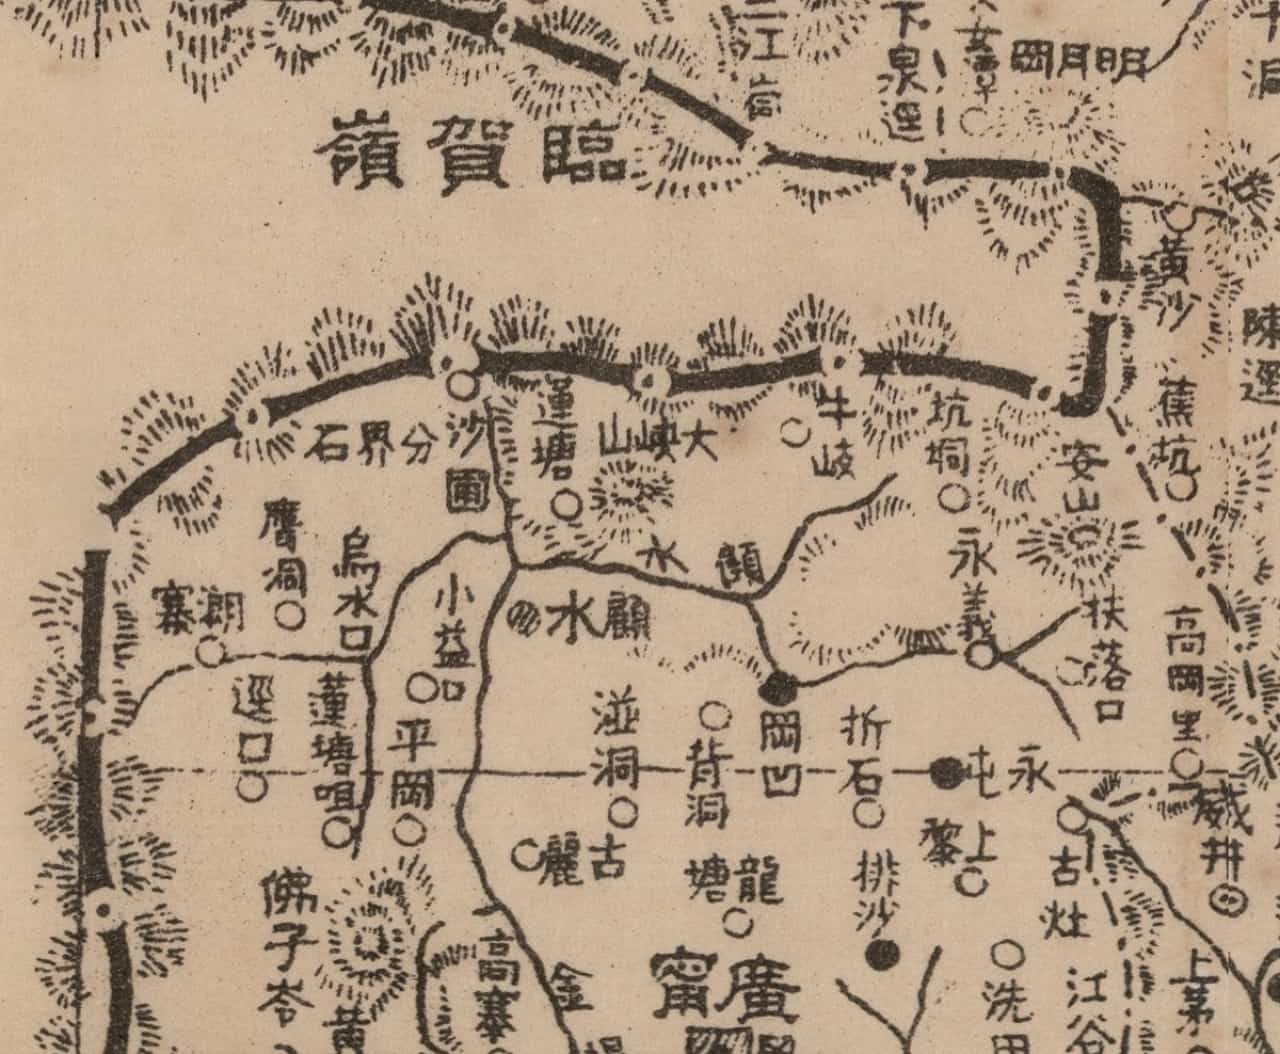 1938年广东省地图细节.jpg